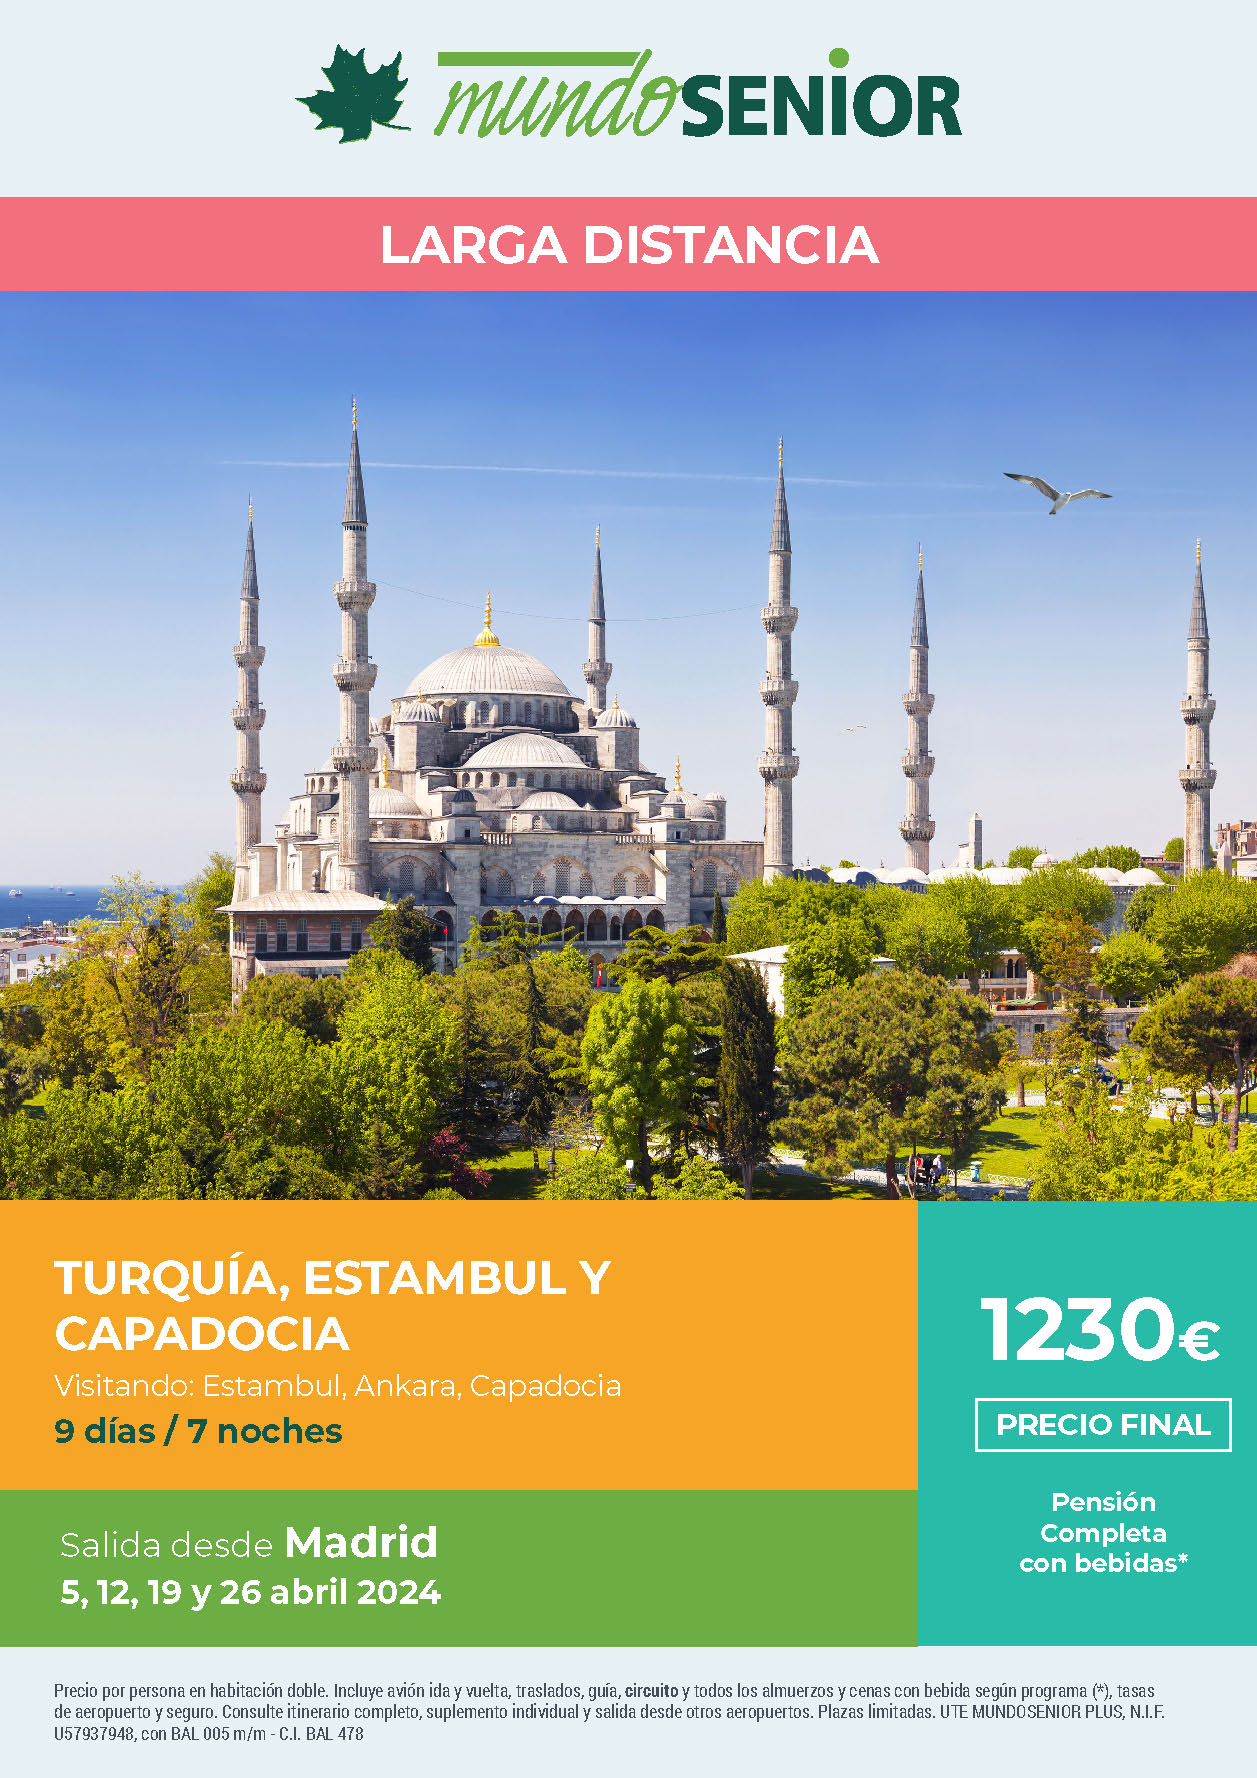 Oferta Mundo Senior circuito Turquia Estambul y Capadocia 9 dias pension completa salidas abril 2024 en vuelo directo desde Madrid